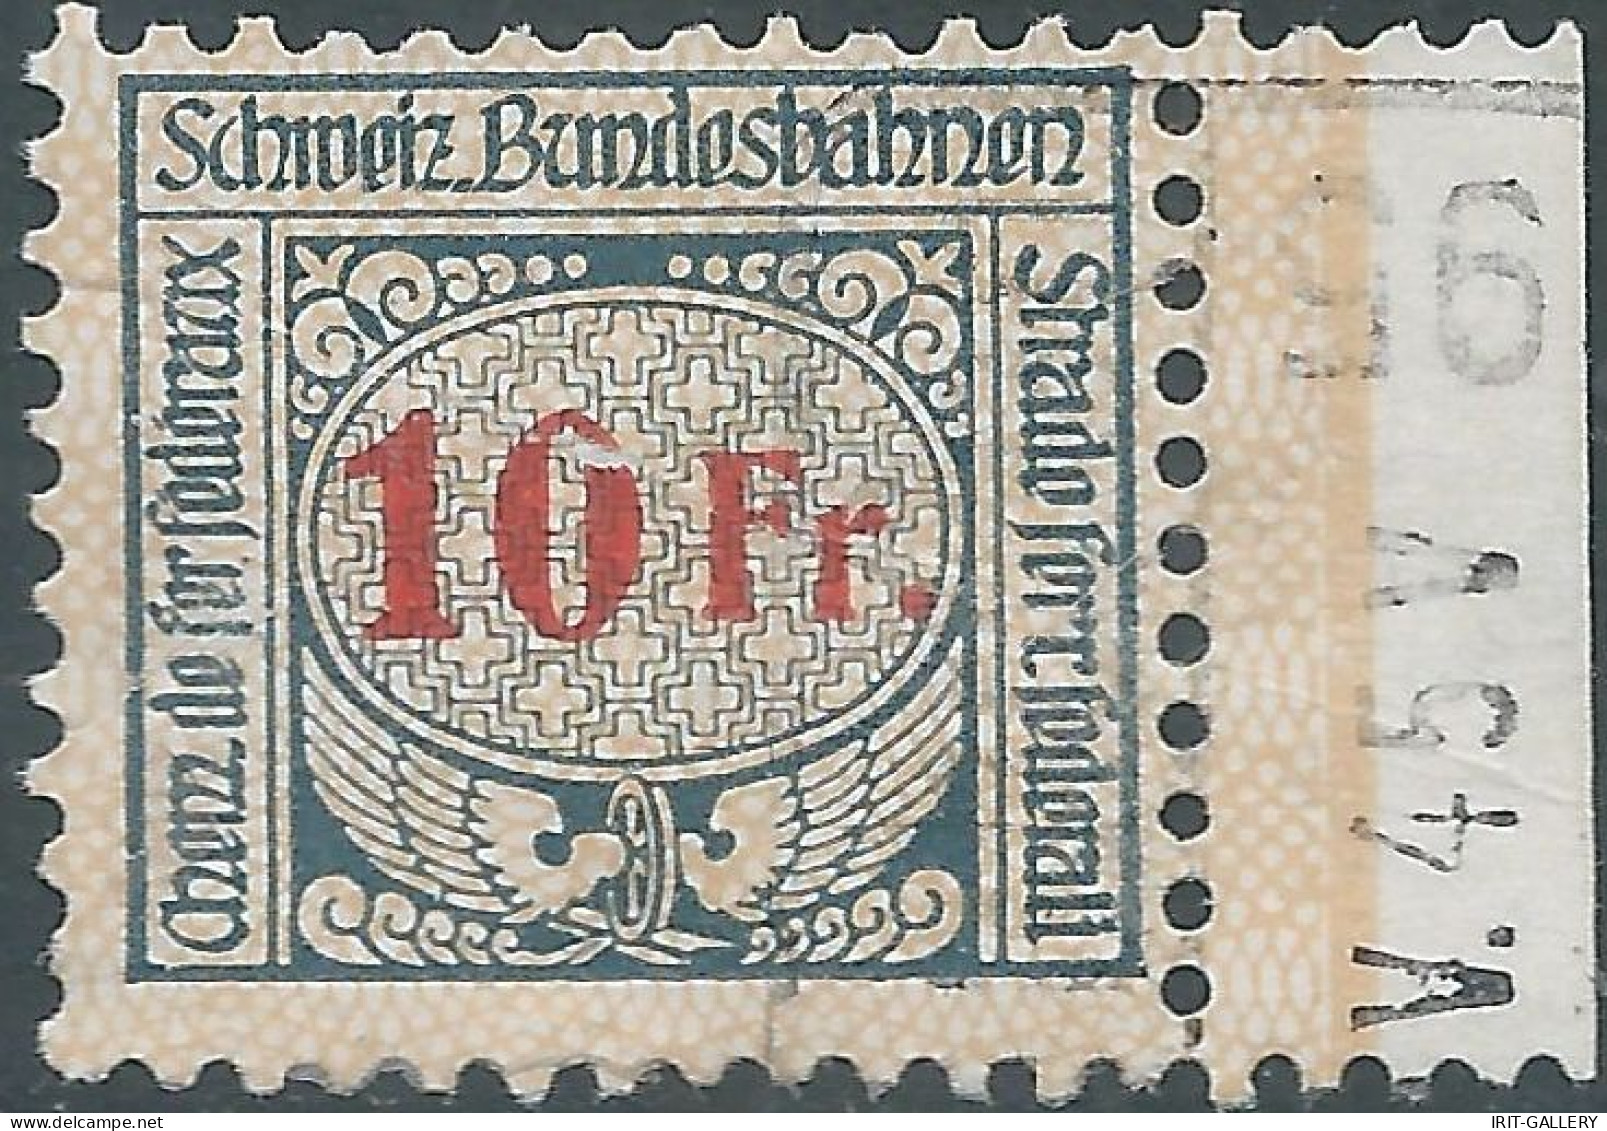 Svizzera-Switzerland-Suisse,1920/25 Revenue Stamp Tax Fiscal 10fr,SCHWEIZ.BUNDESBAHNEN-SWISS.FEDERAL RAILWAYS,Defective! - Ferrovie